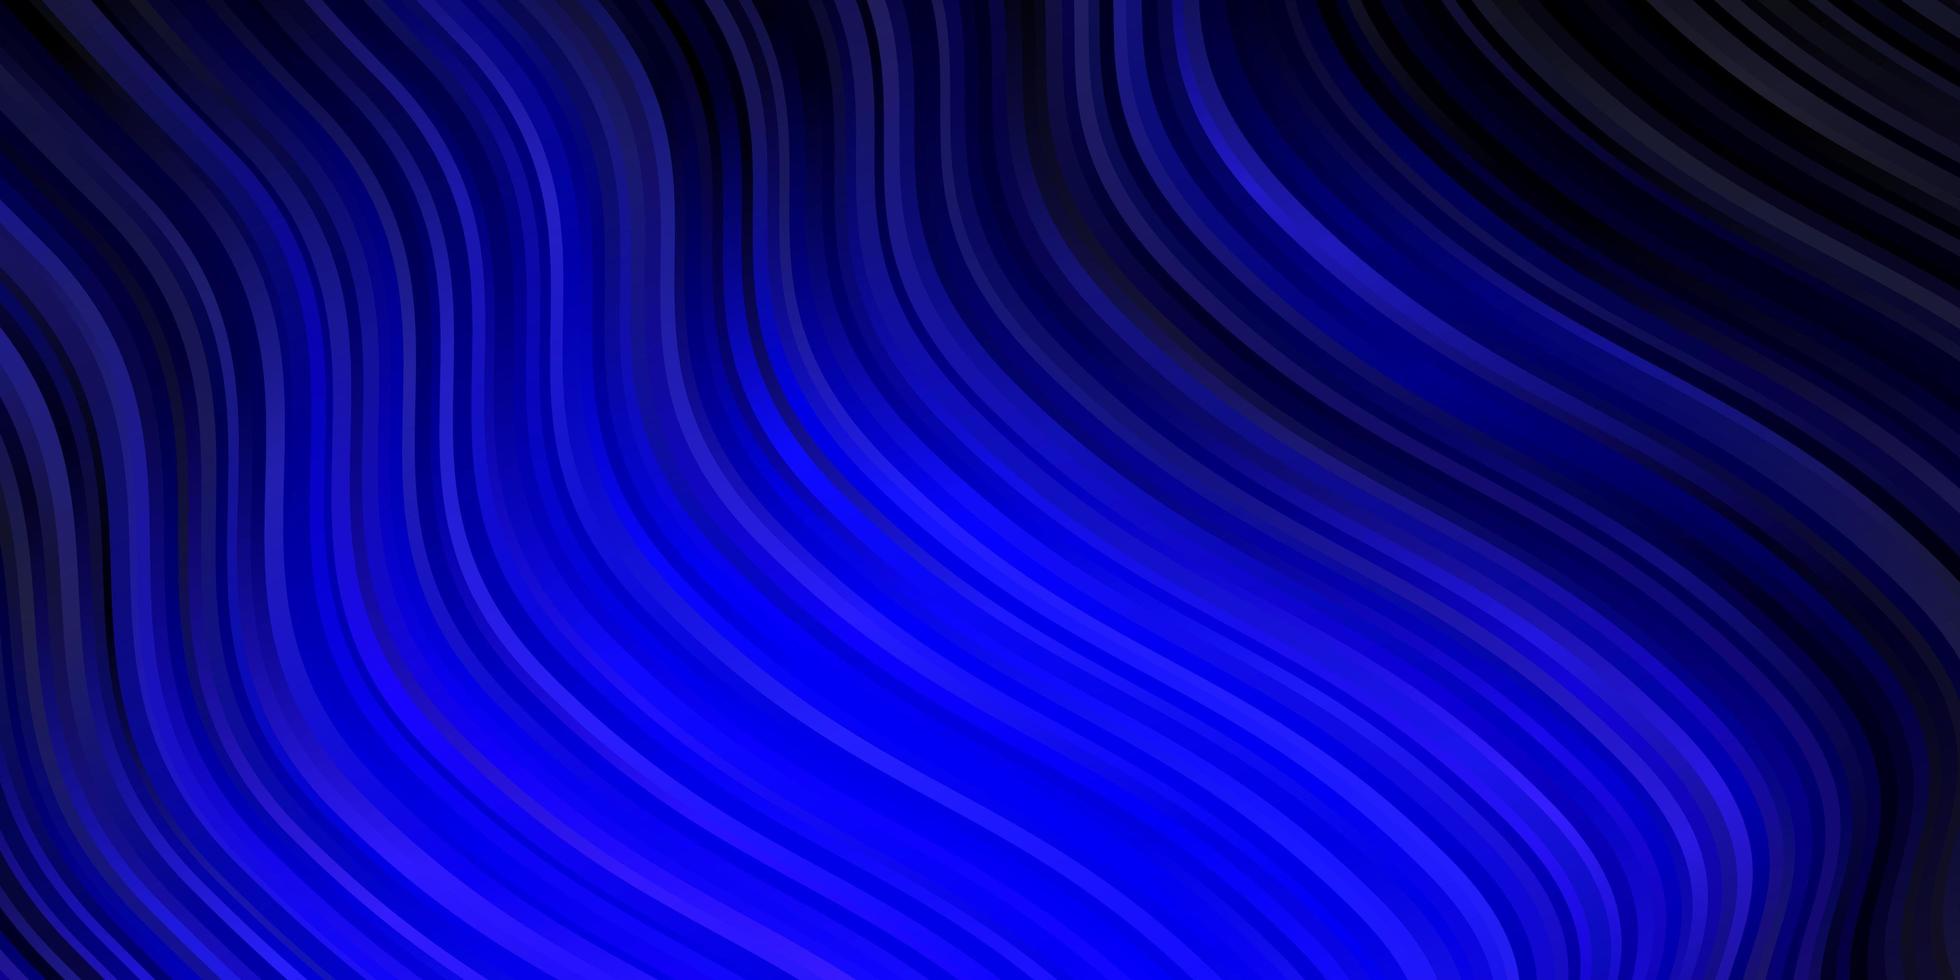 textura de vector azul oscuro con curvas.